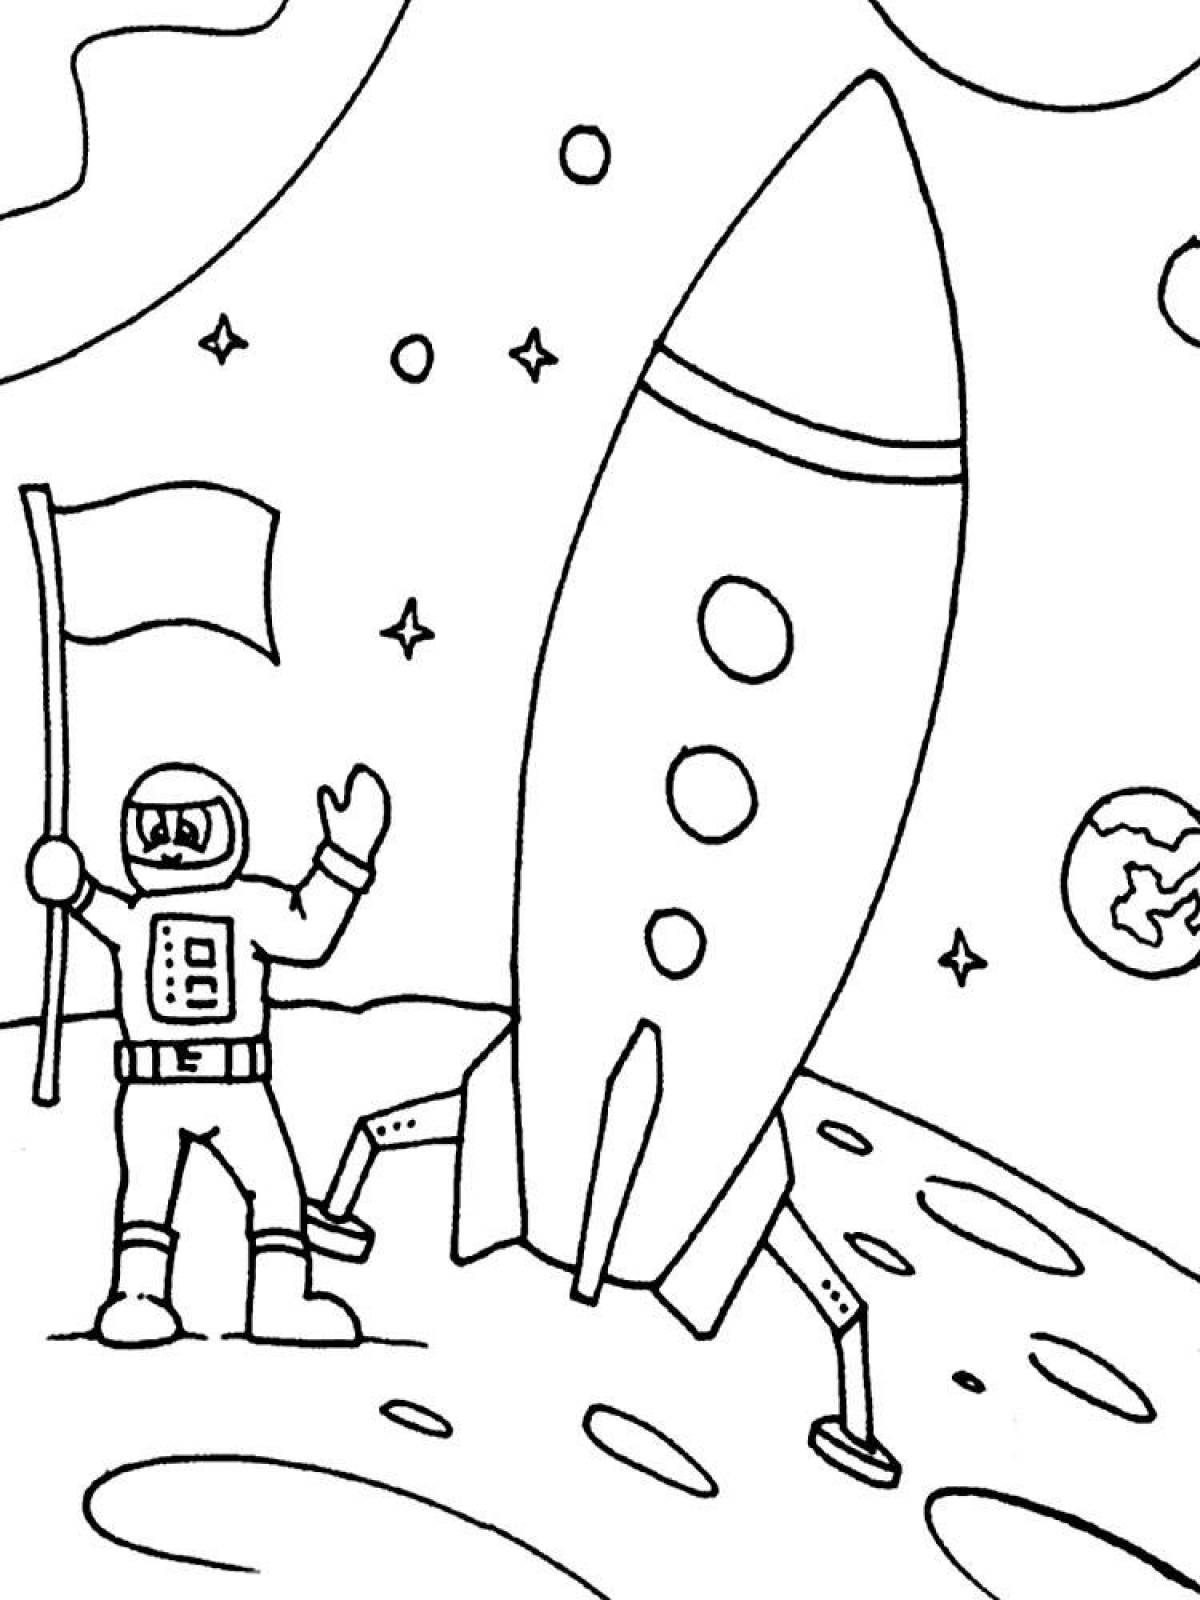 Раскраски к дню космонавтики для детей распечатать. Раскраска. В космосе. Рисунок ко Дню космонавтики. Рисунок ко Дню космонавтики раскраска. Раскраска день космонавтики для детей.